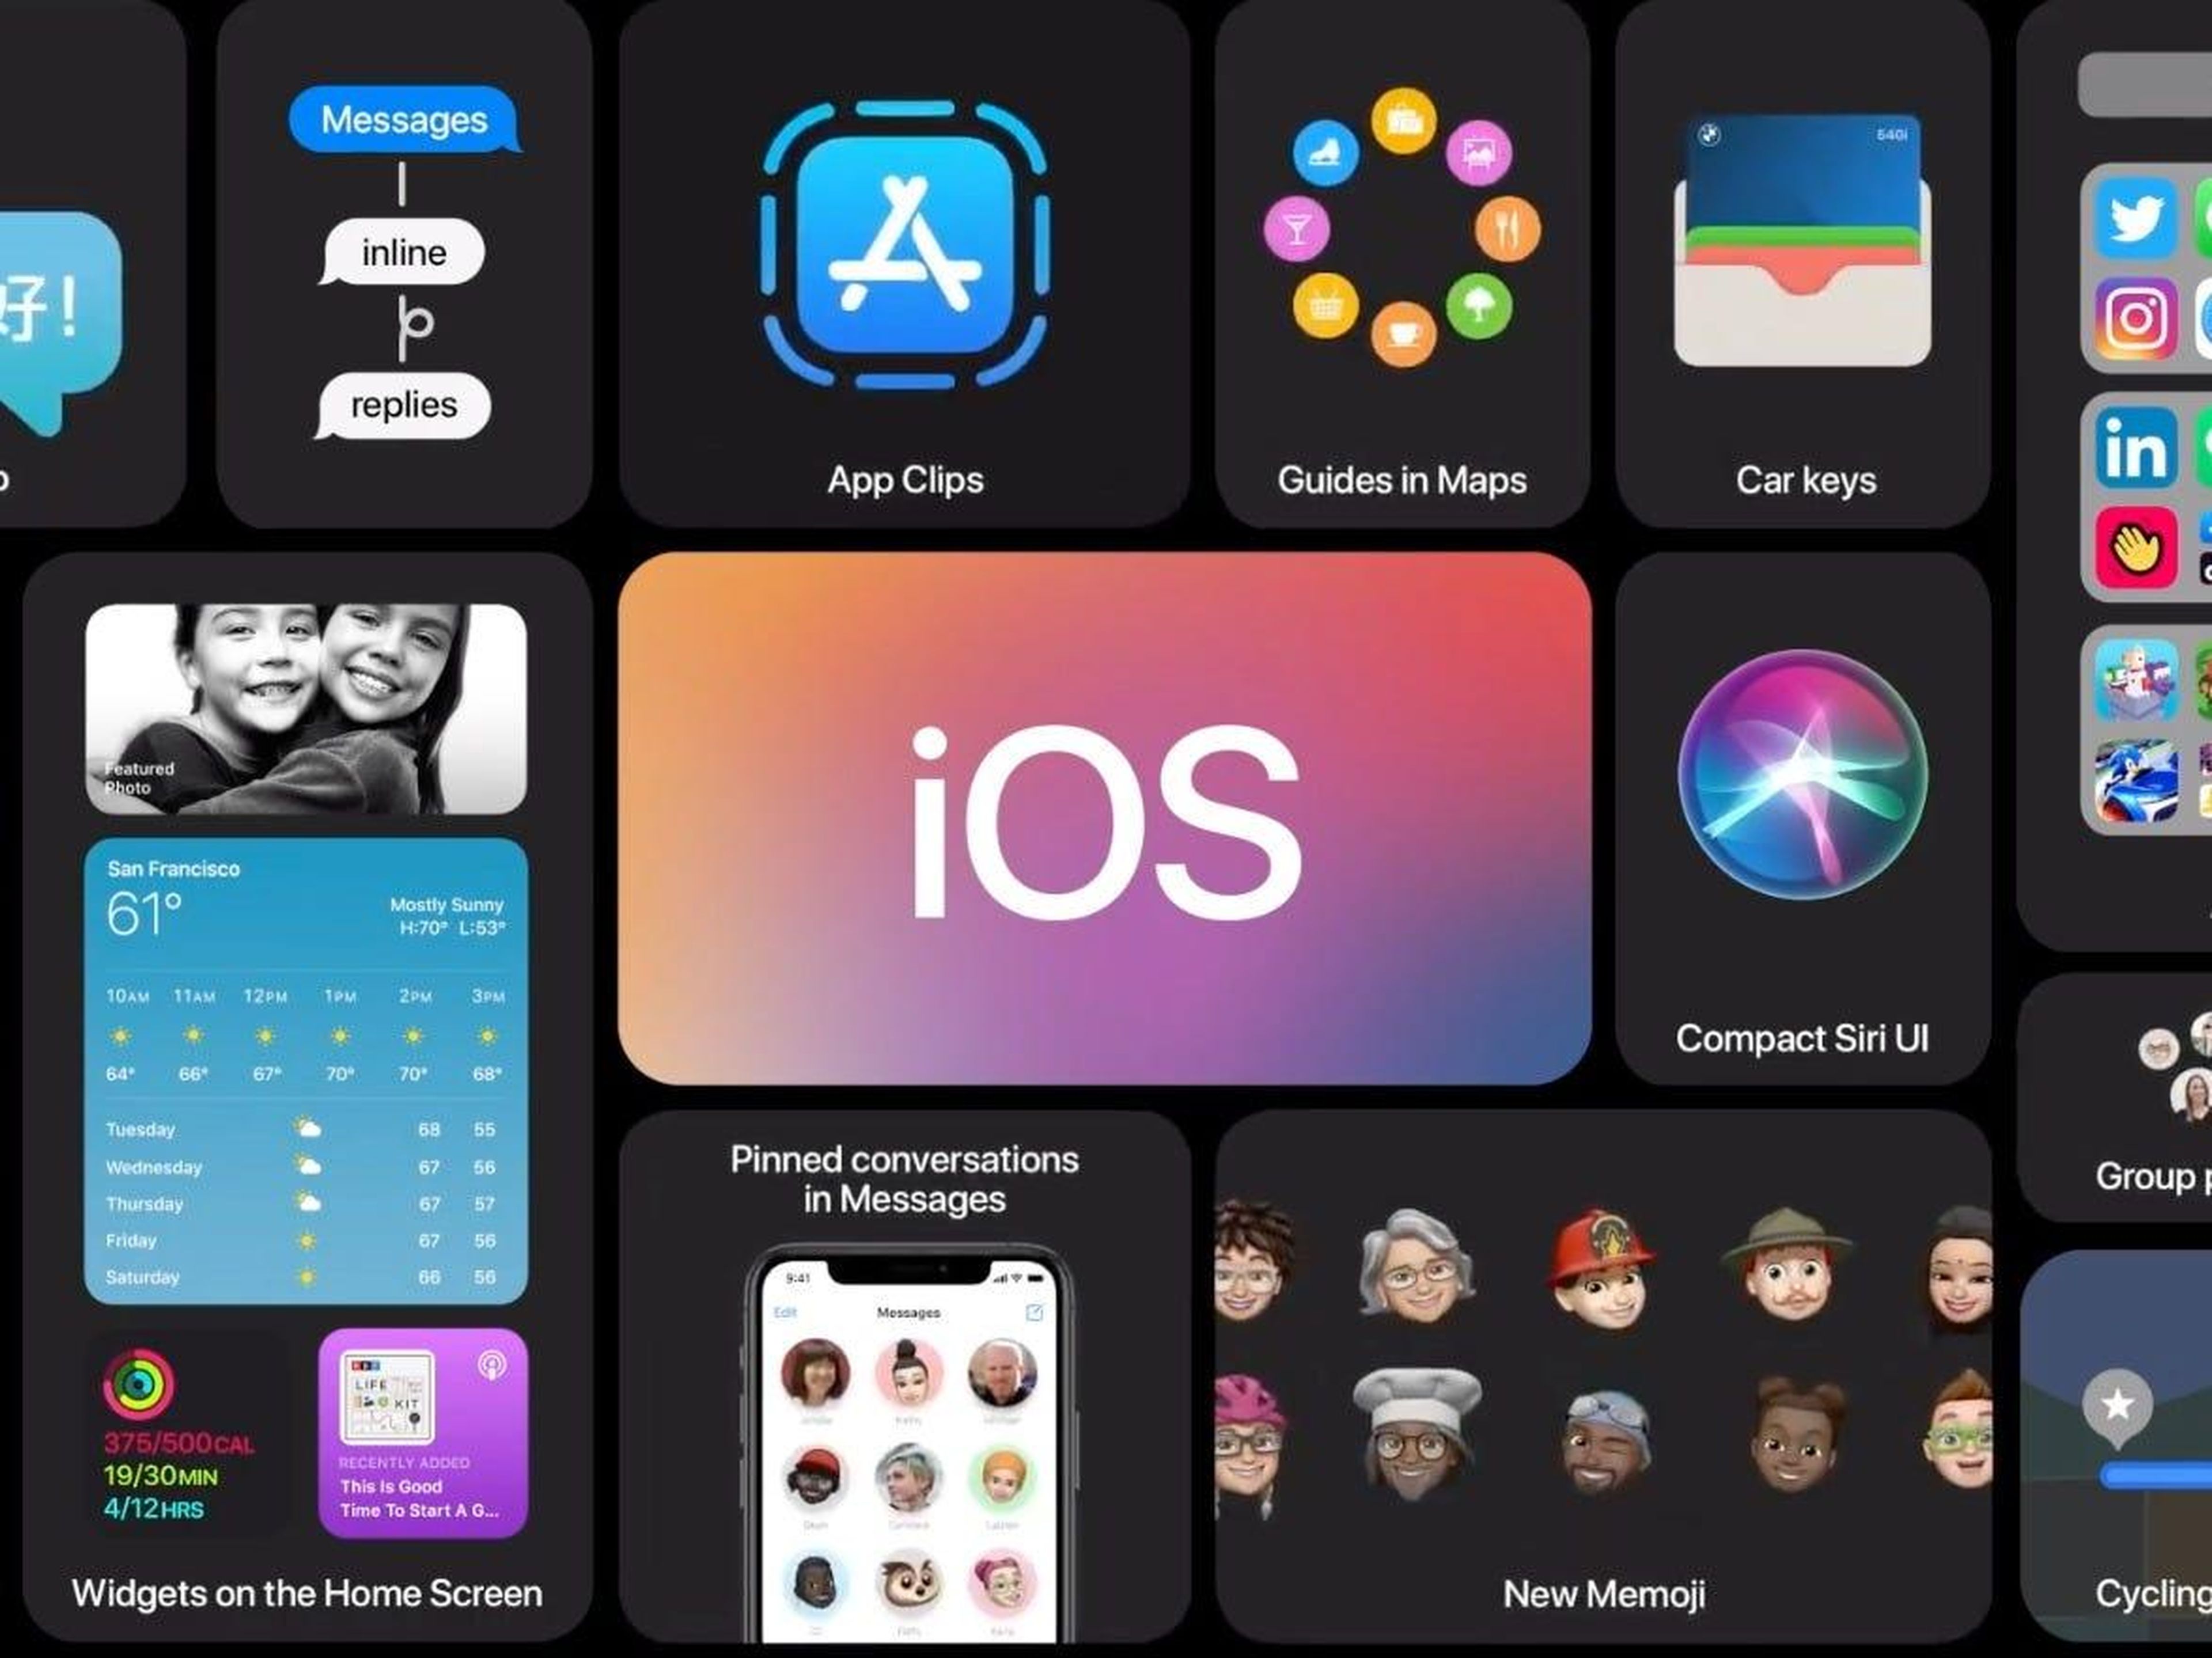 Apple acaba de revelar la próxima versión de su software para iPhone, iOS 14. Aquí están los mayores cambios que se producirán en tu iPhone este otoño.